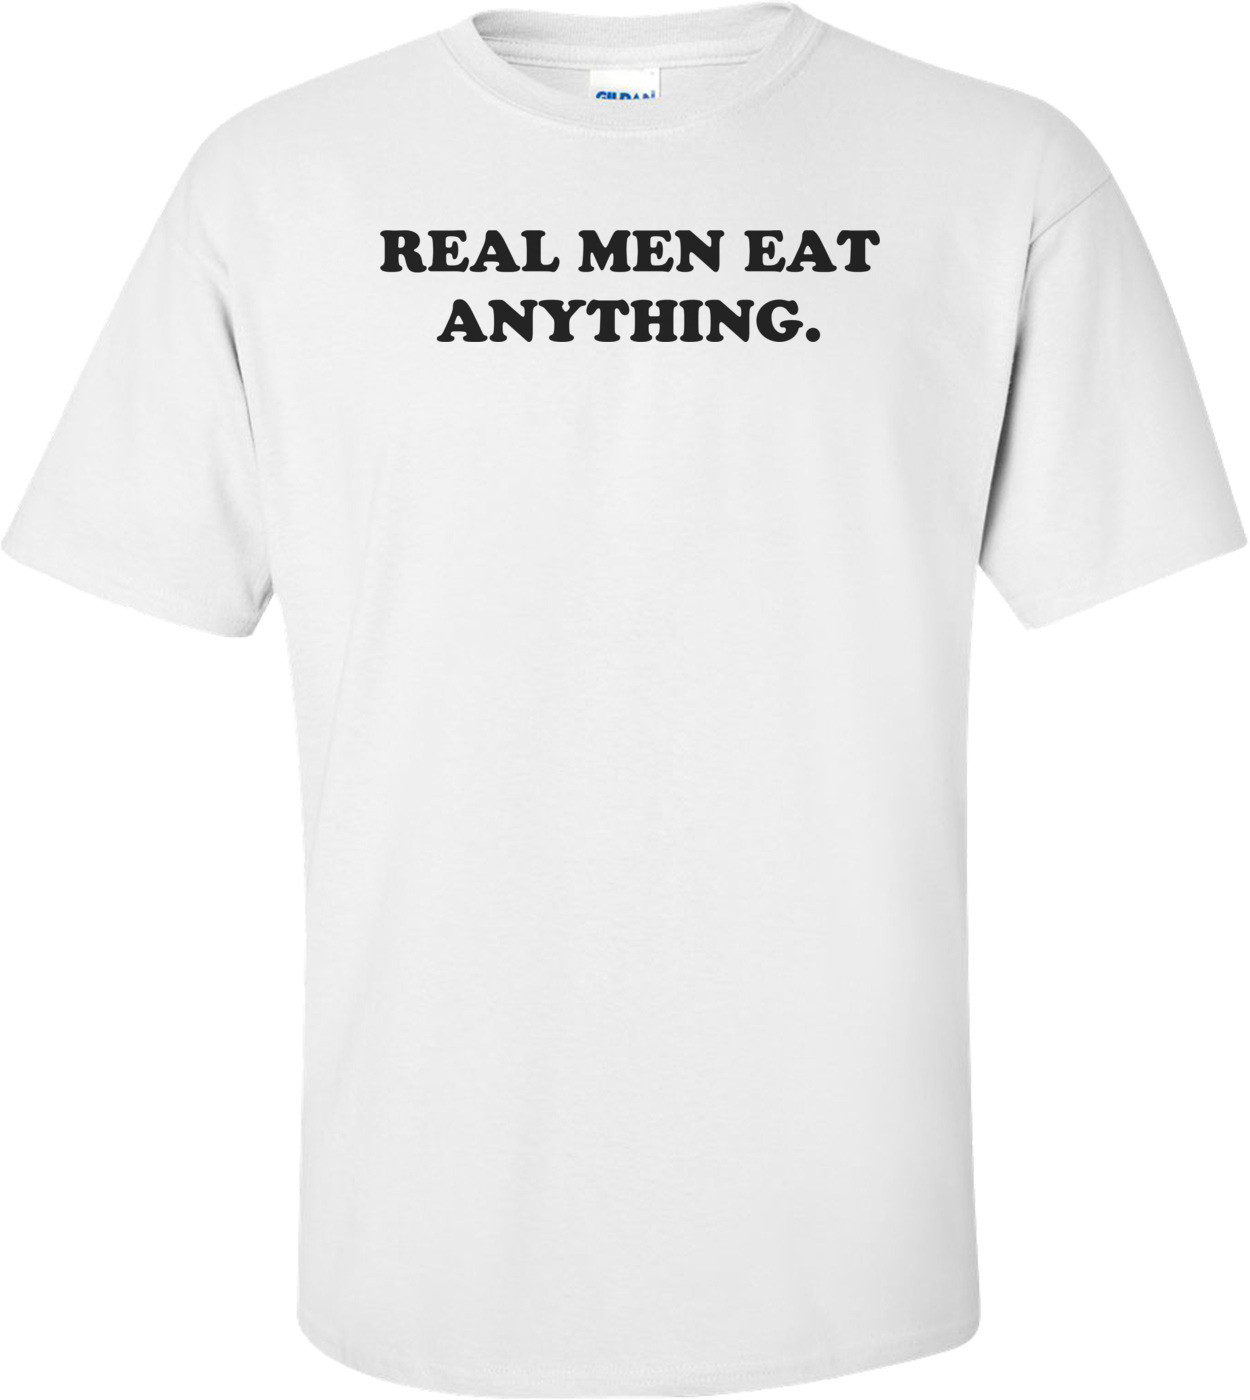 REAL MEN EAT ANYTHING. Shirt